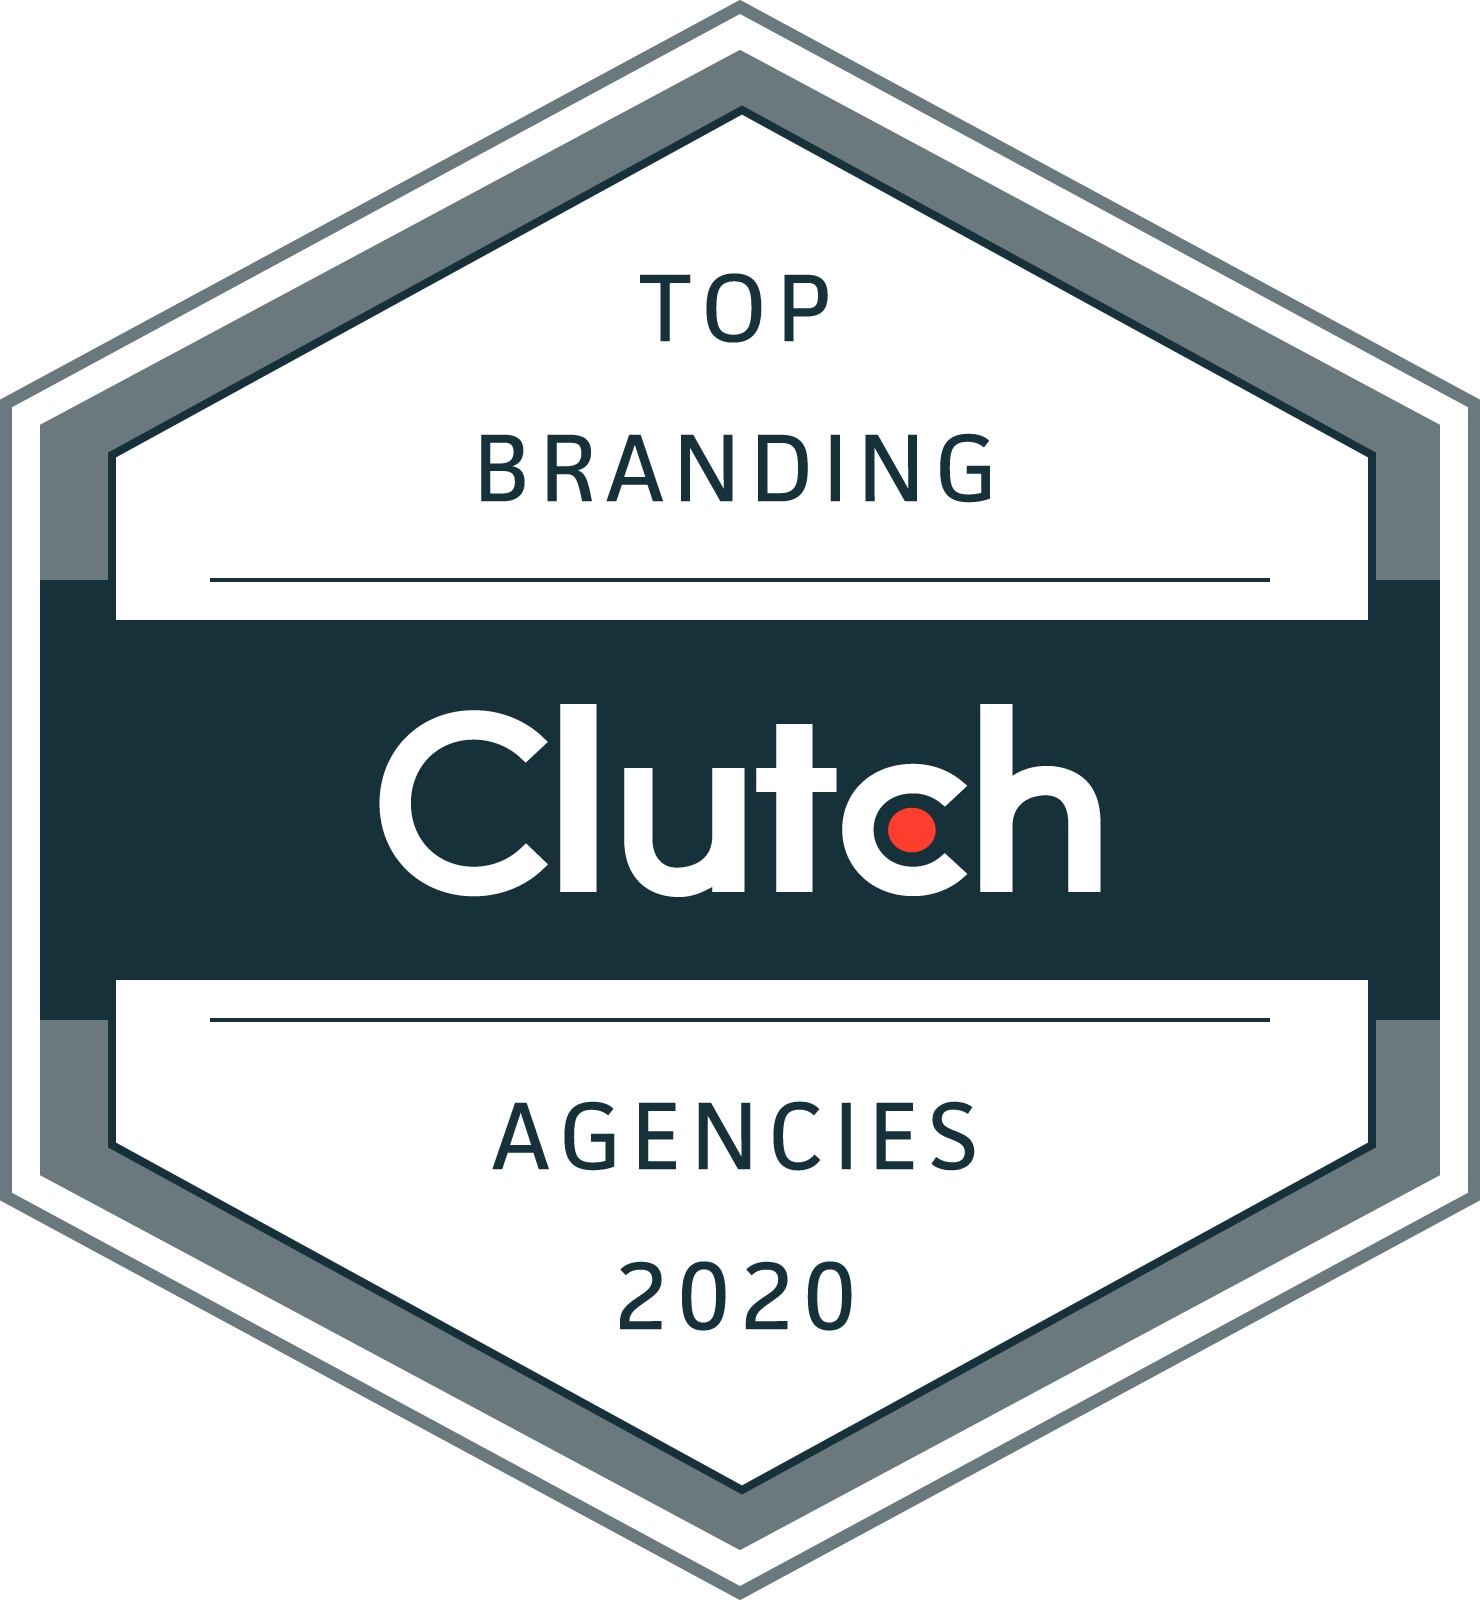 Clutch Top Branding Award Agencies 2020